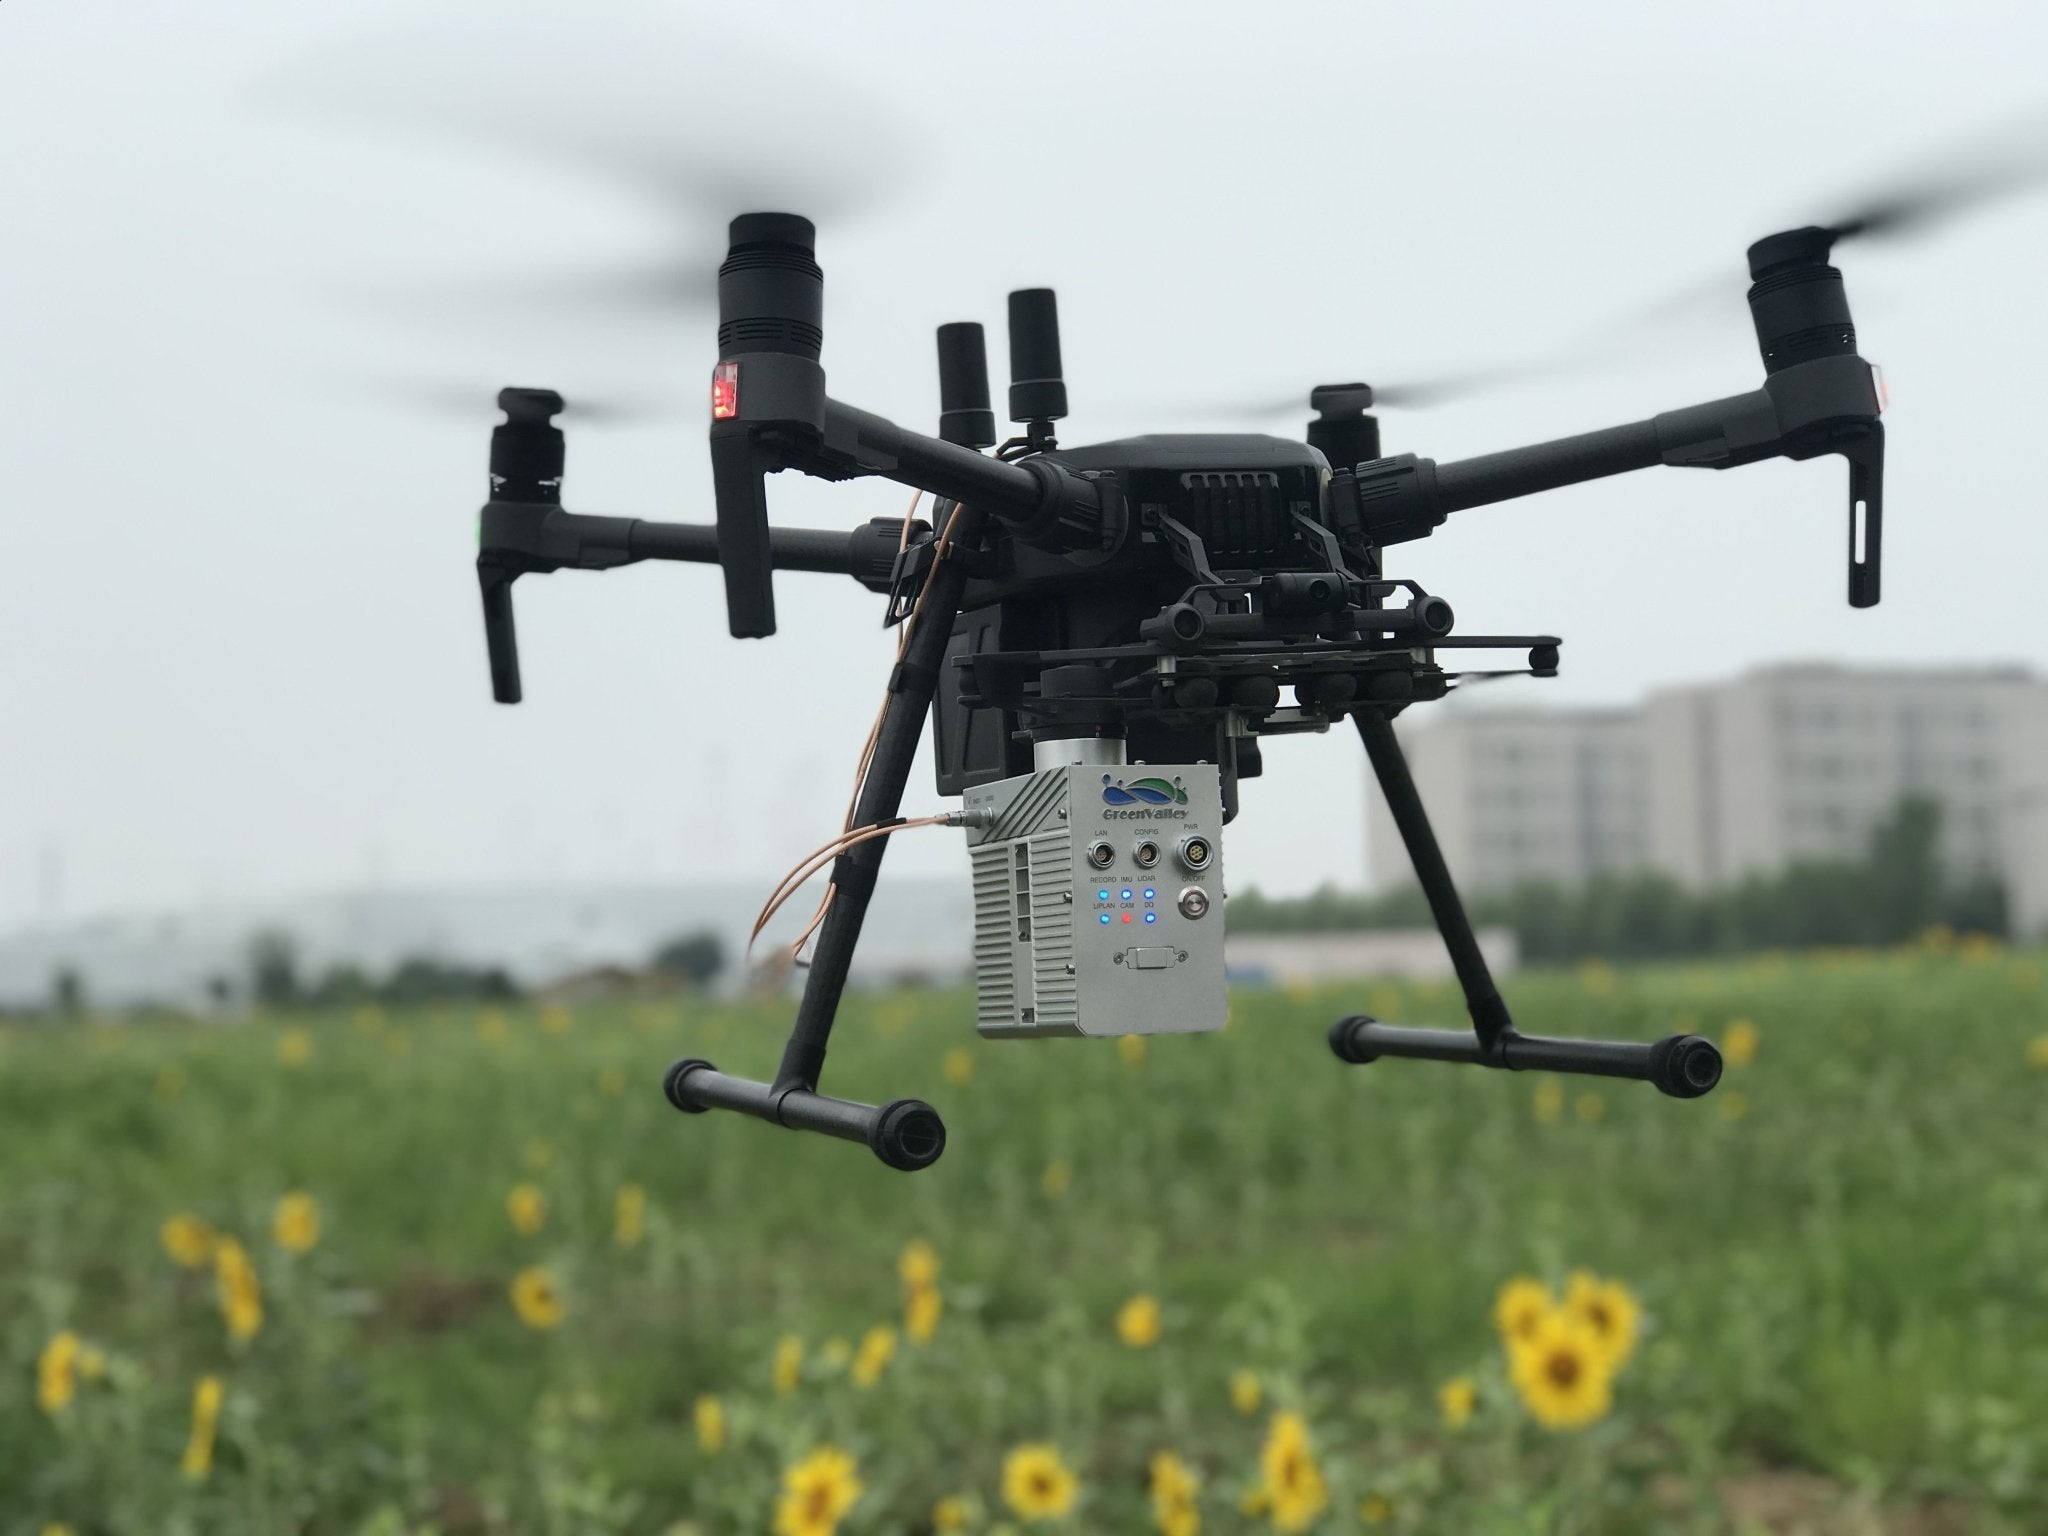 x4 mini quadcopter with hd camera